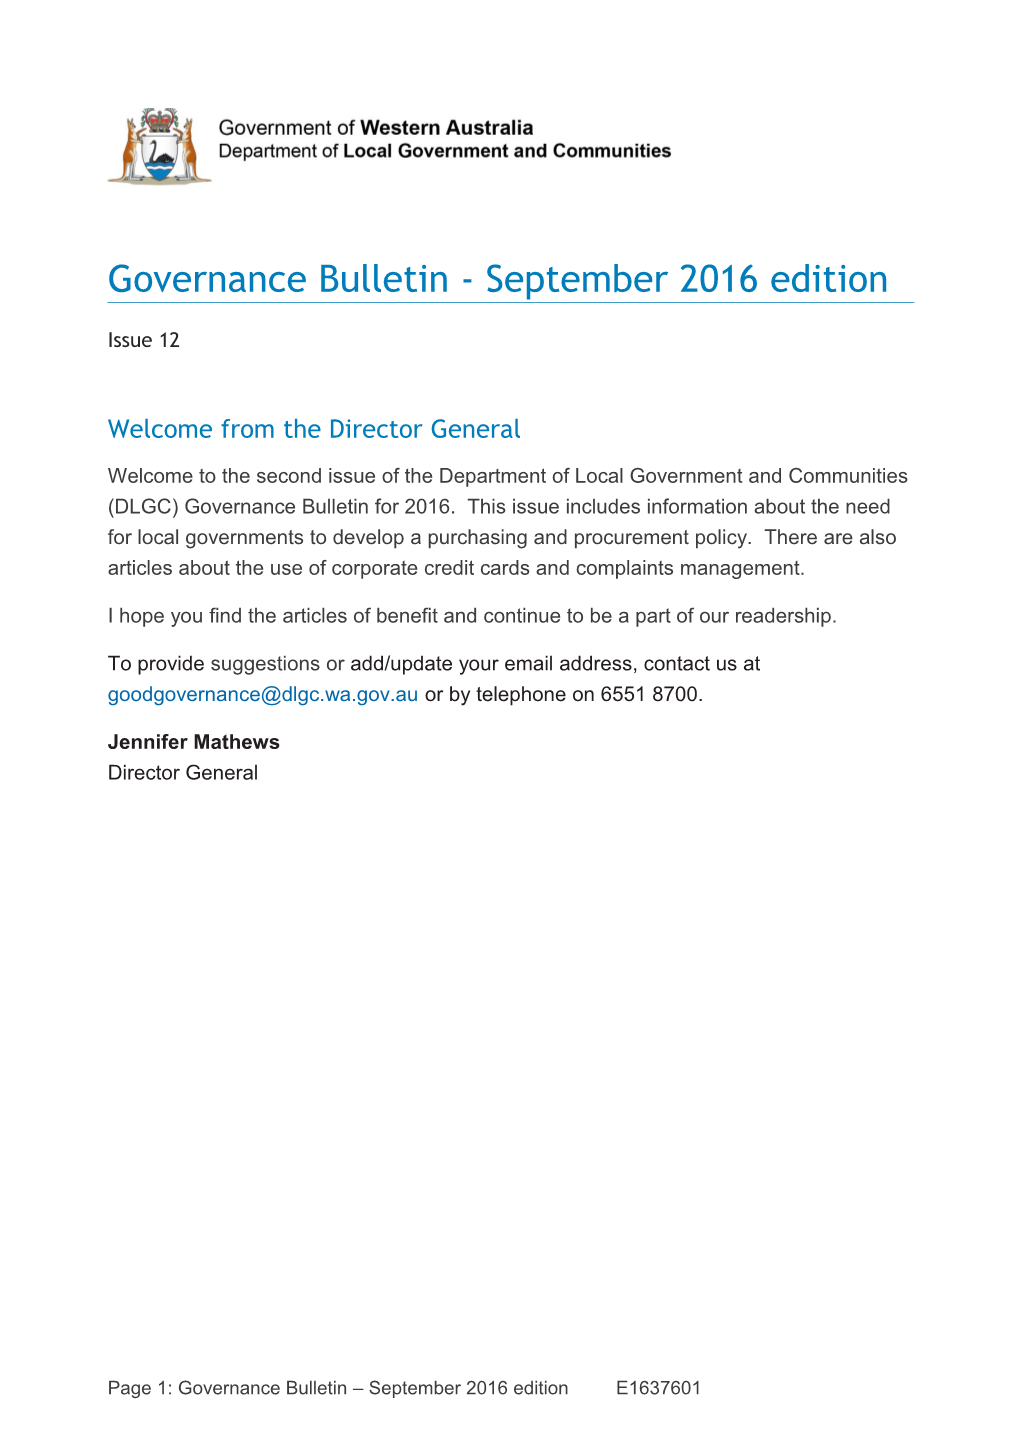 Governance Bulletin - Issue 12 September 2014